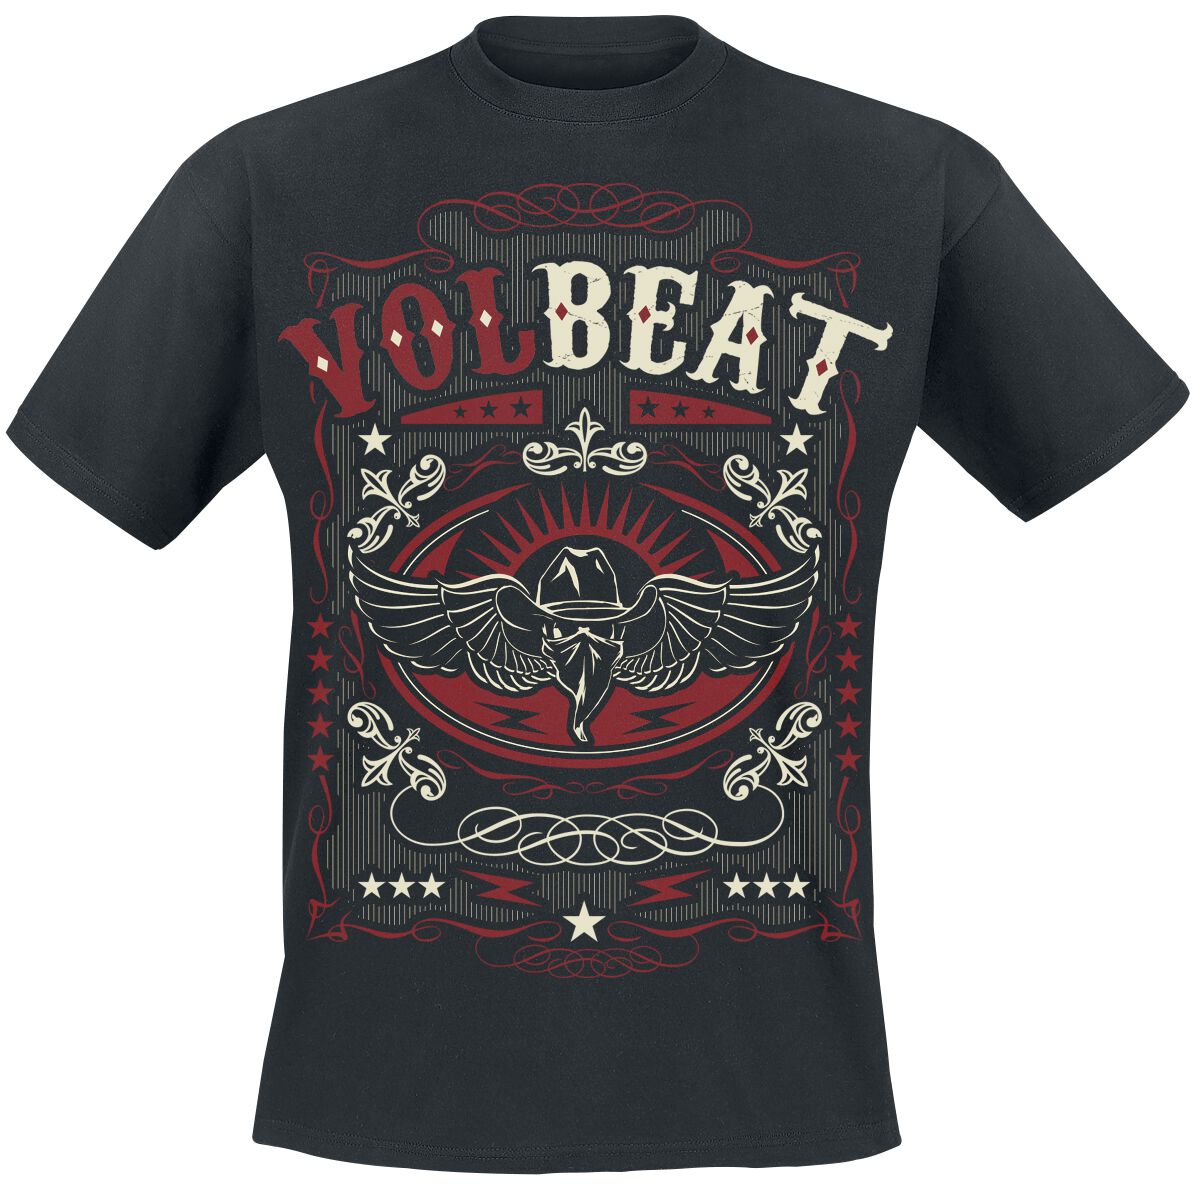 Volbeat T-Shirt - Western Wings Black - M bis 4XL - für Männer - Größe M - schwarz  - EMP exklusives Merchandise!